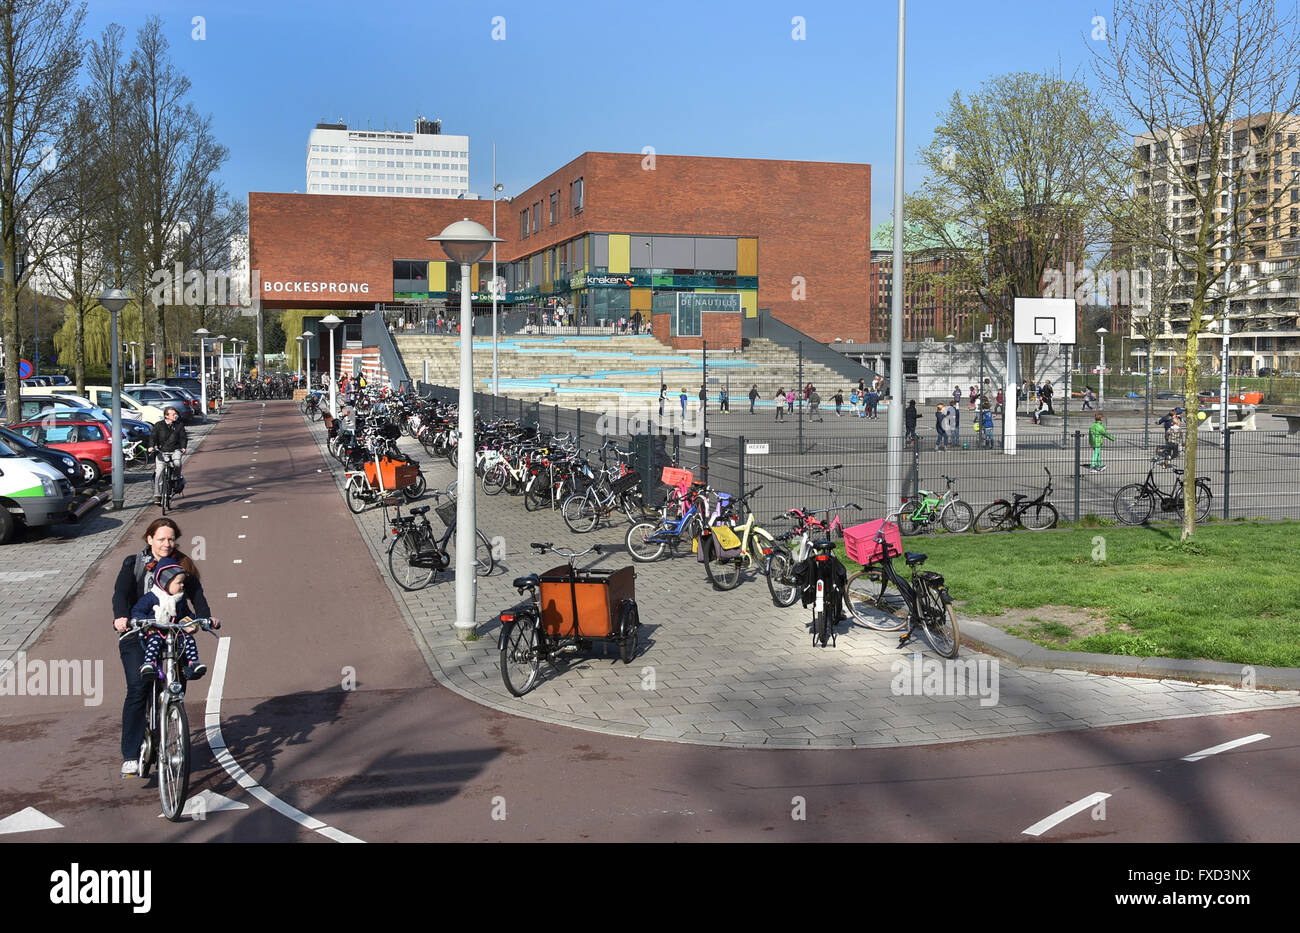 Bockesprong - De Nautilus school (Theophile de Bockstraat)  Dutch Amsterdam Netherlands Stock Photo